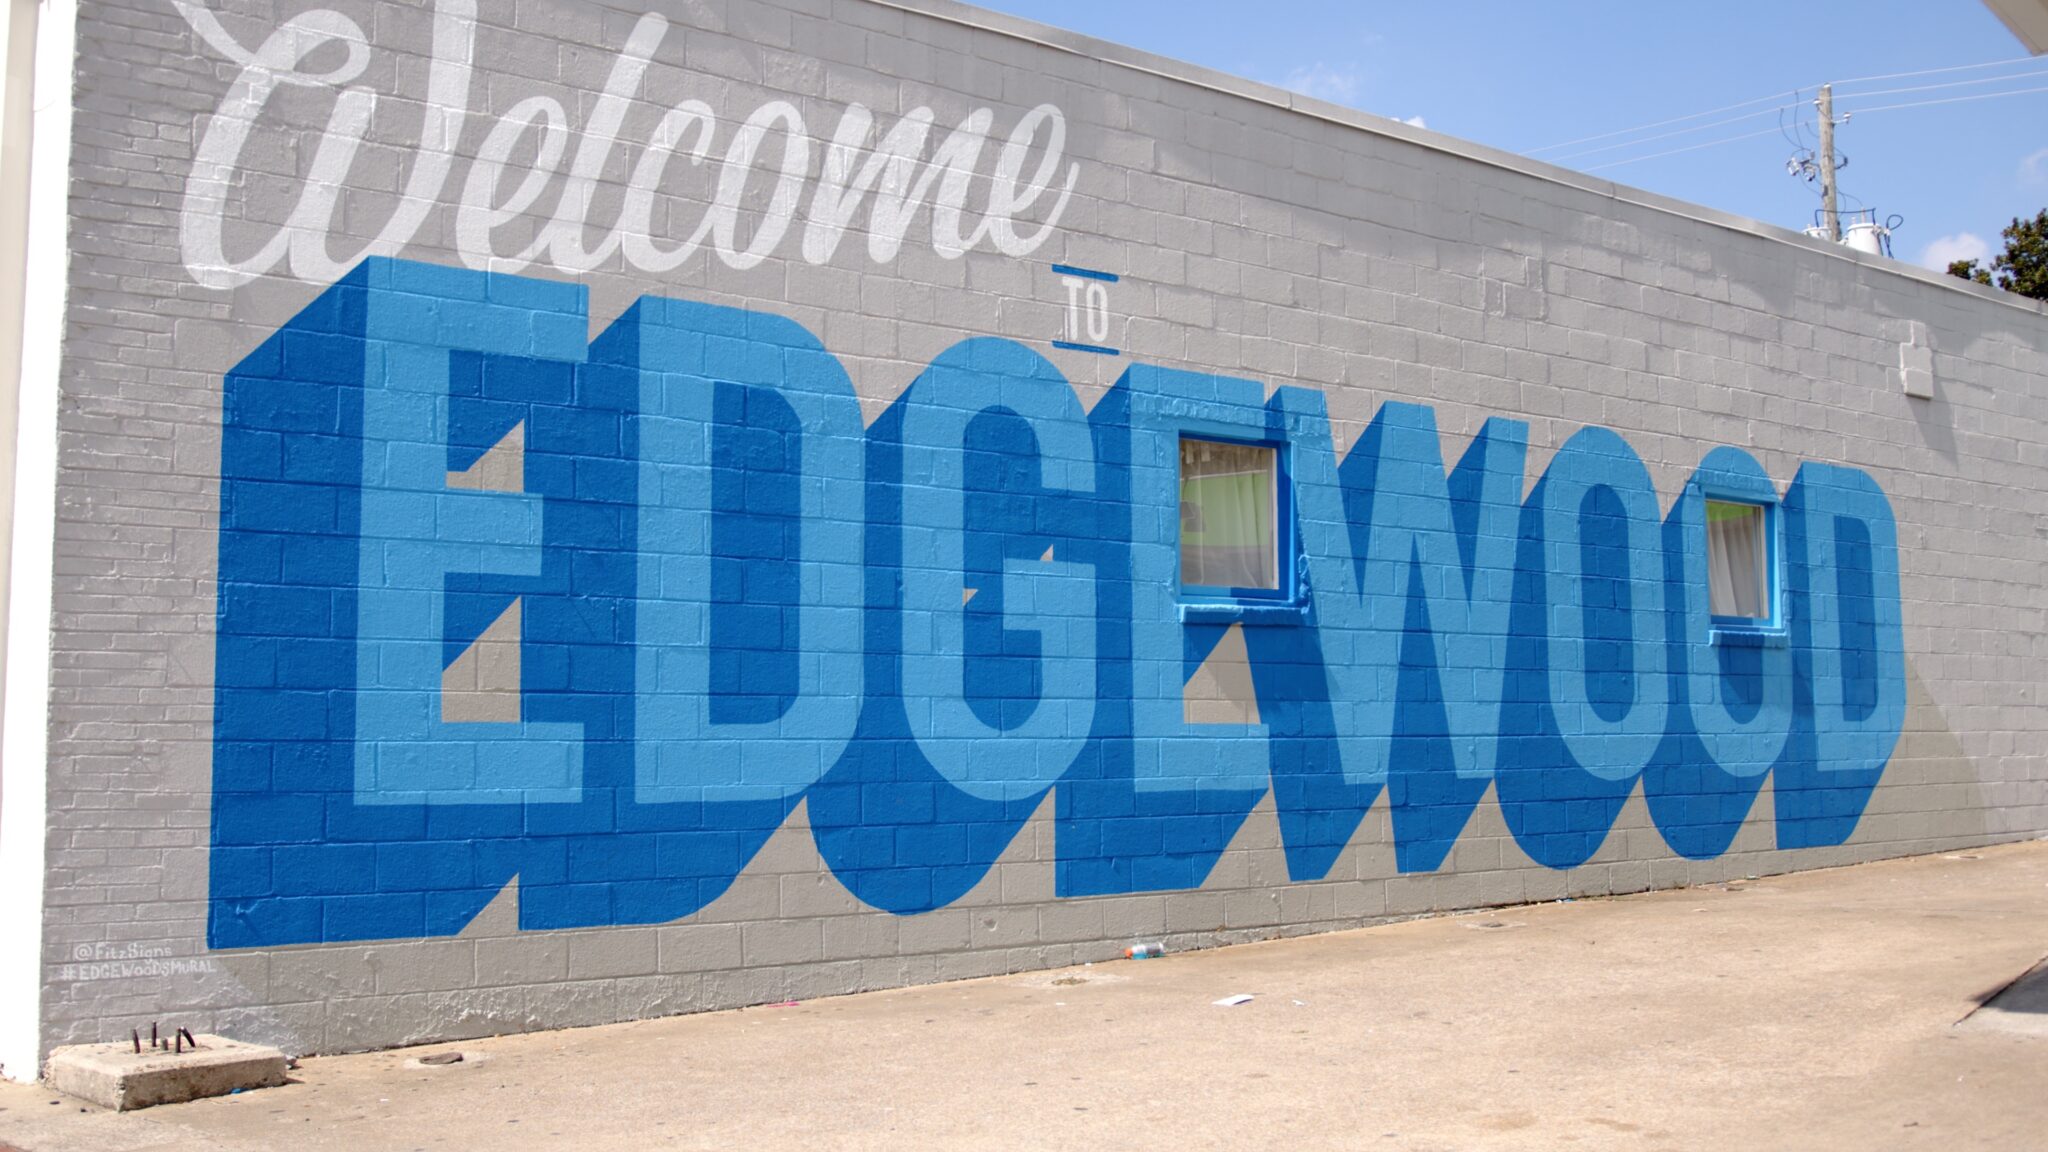 Edgewood mural